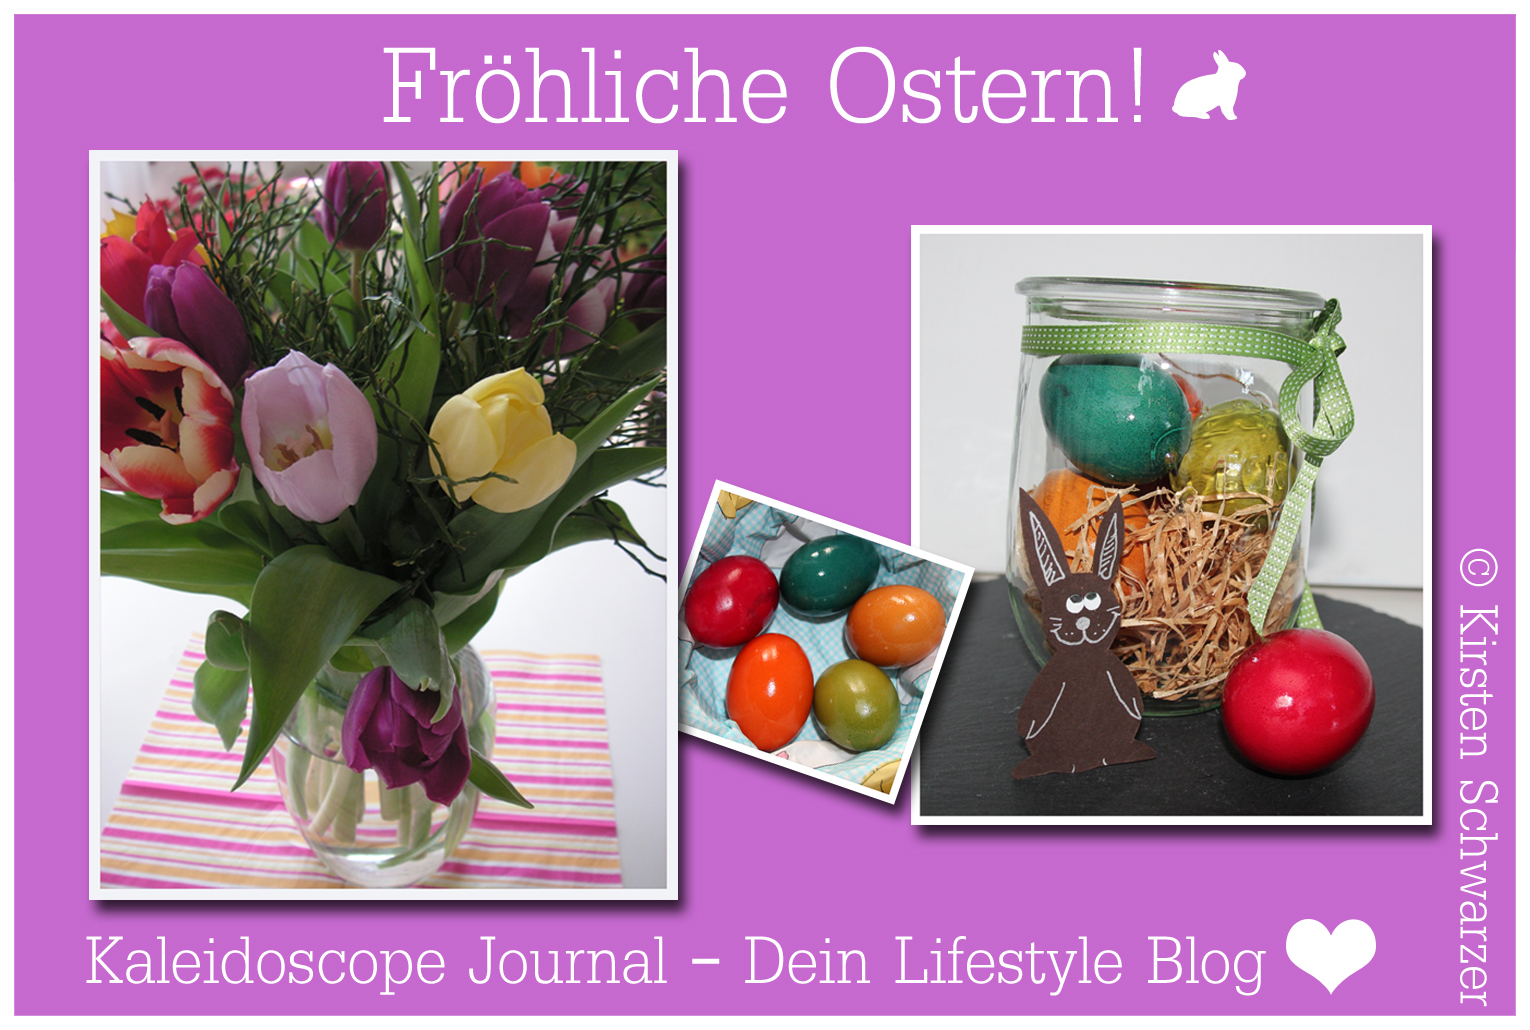 Frohe Ostern & eine fröhliche Ostereiersuche! www.kaleidoscope-journal.de, Kirsten Schwarzer